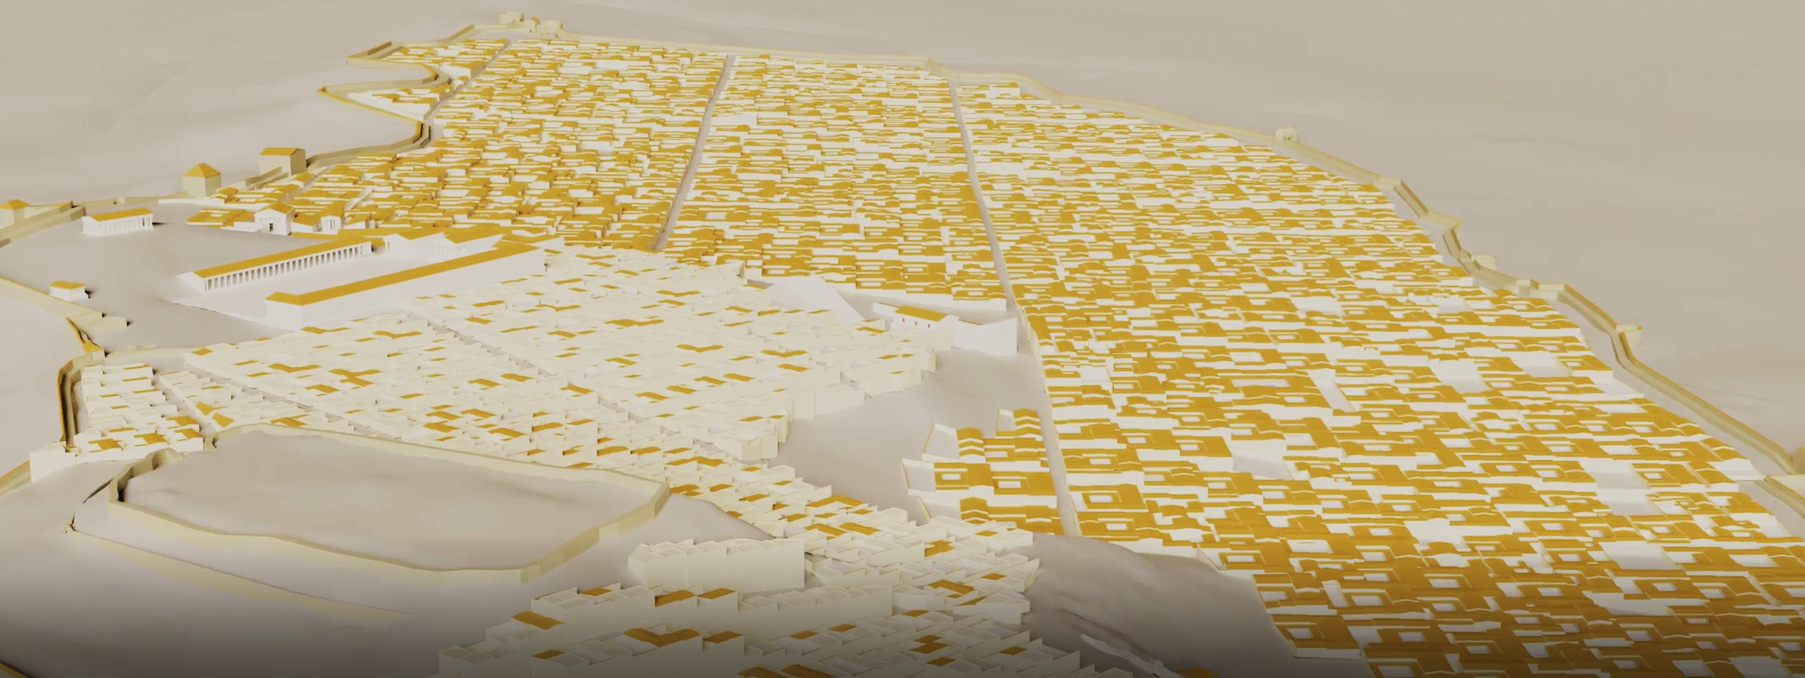 Capture du modèle 3D général de la ville d’Apollonia à l’époque impériale, réalisé par des étudiants de CY Cergy Paris Université.